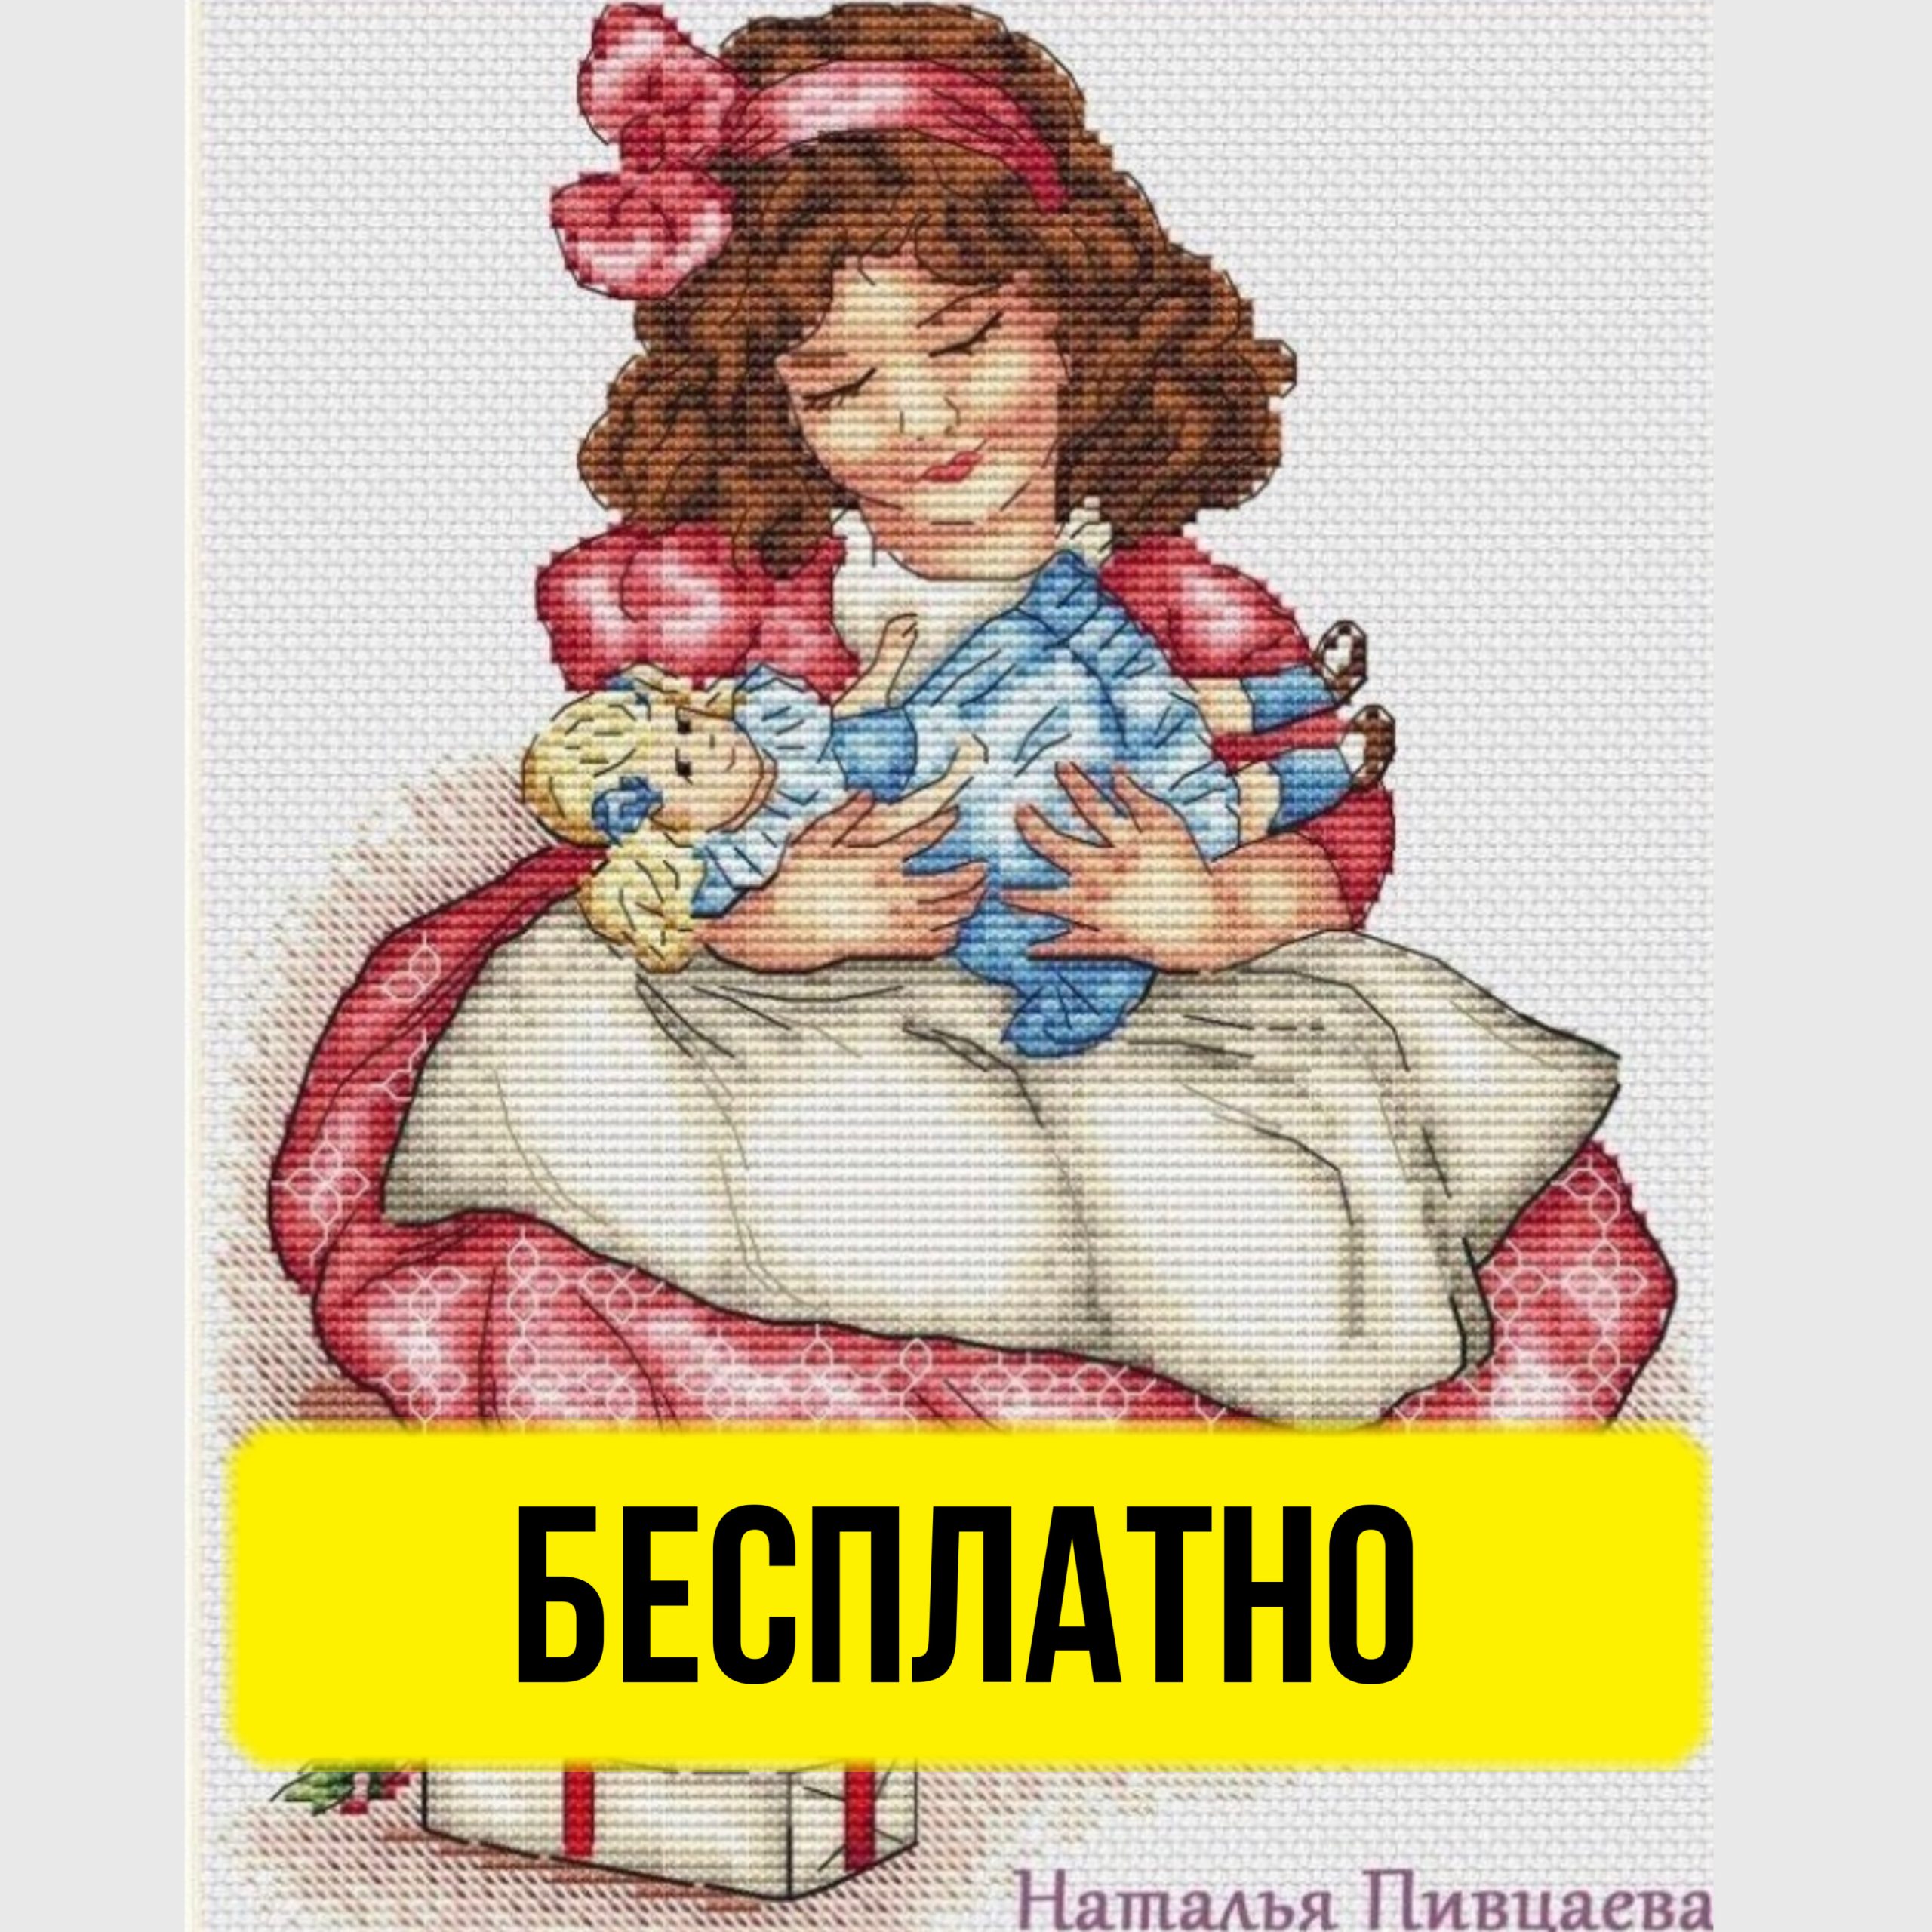 Бесплатная схема вышивки крестом с ретро куклой от Наталии Пивцаевой.